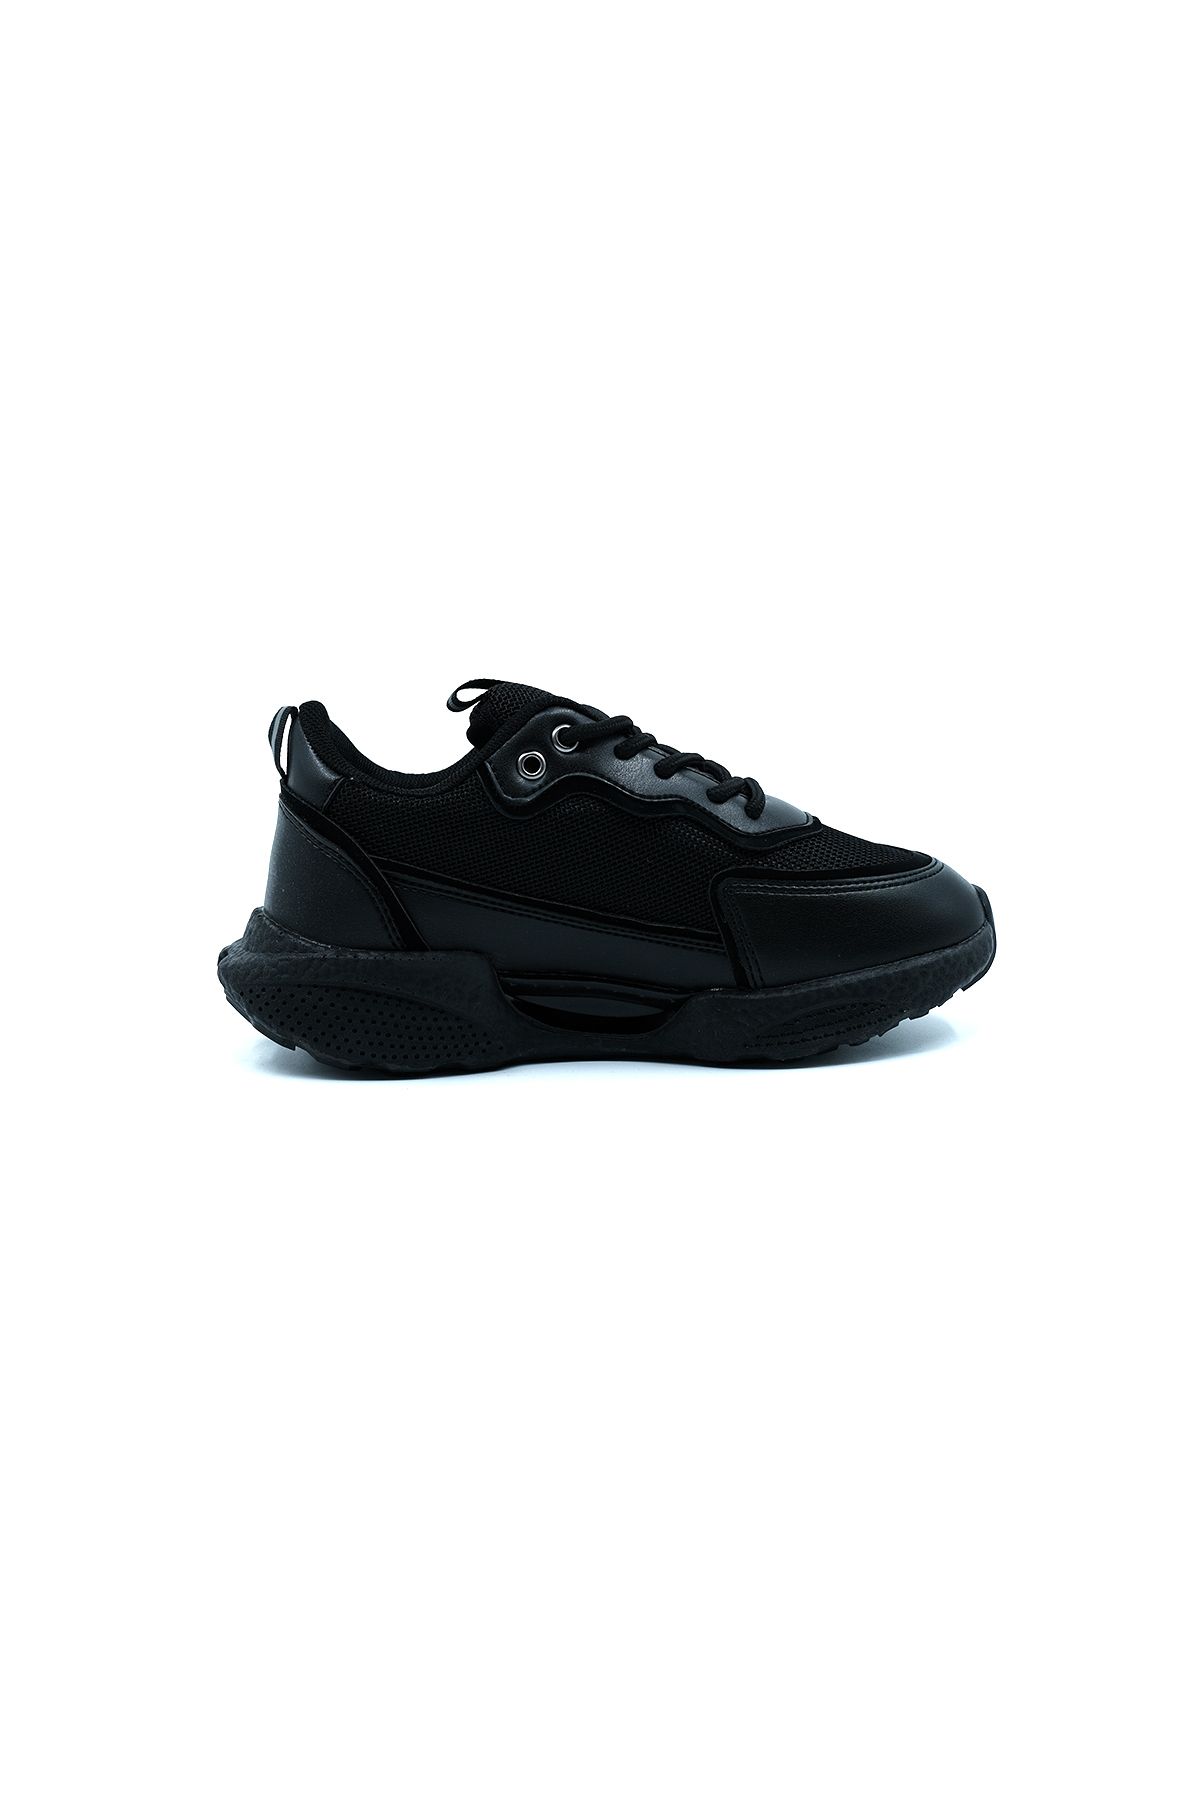 ULUSOY Flet Zenne 303 Kadın Spor Ayakkabı ÜN03A303.01 Anorak Siyah